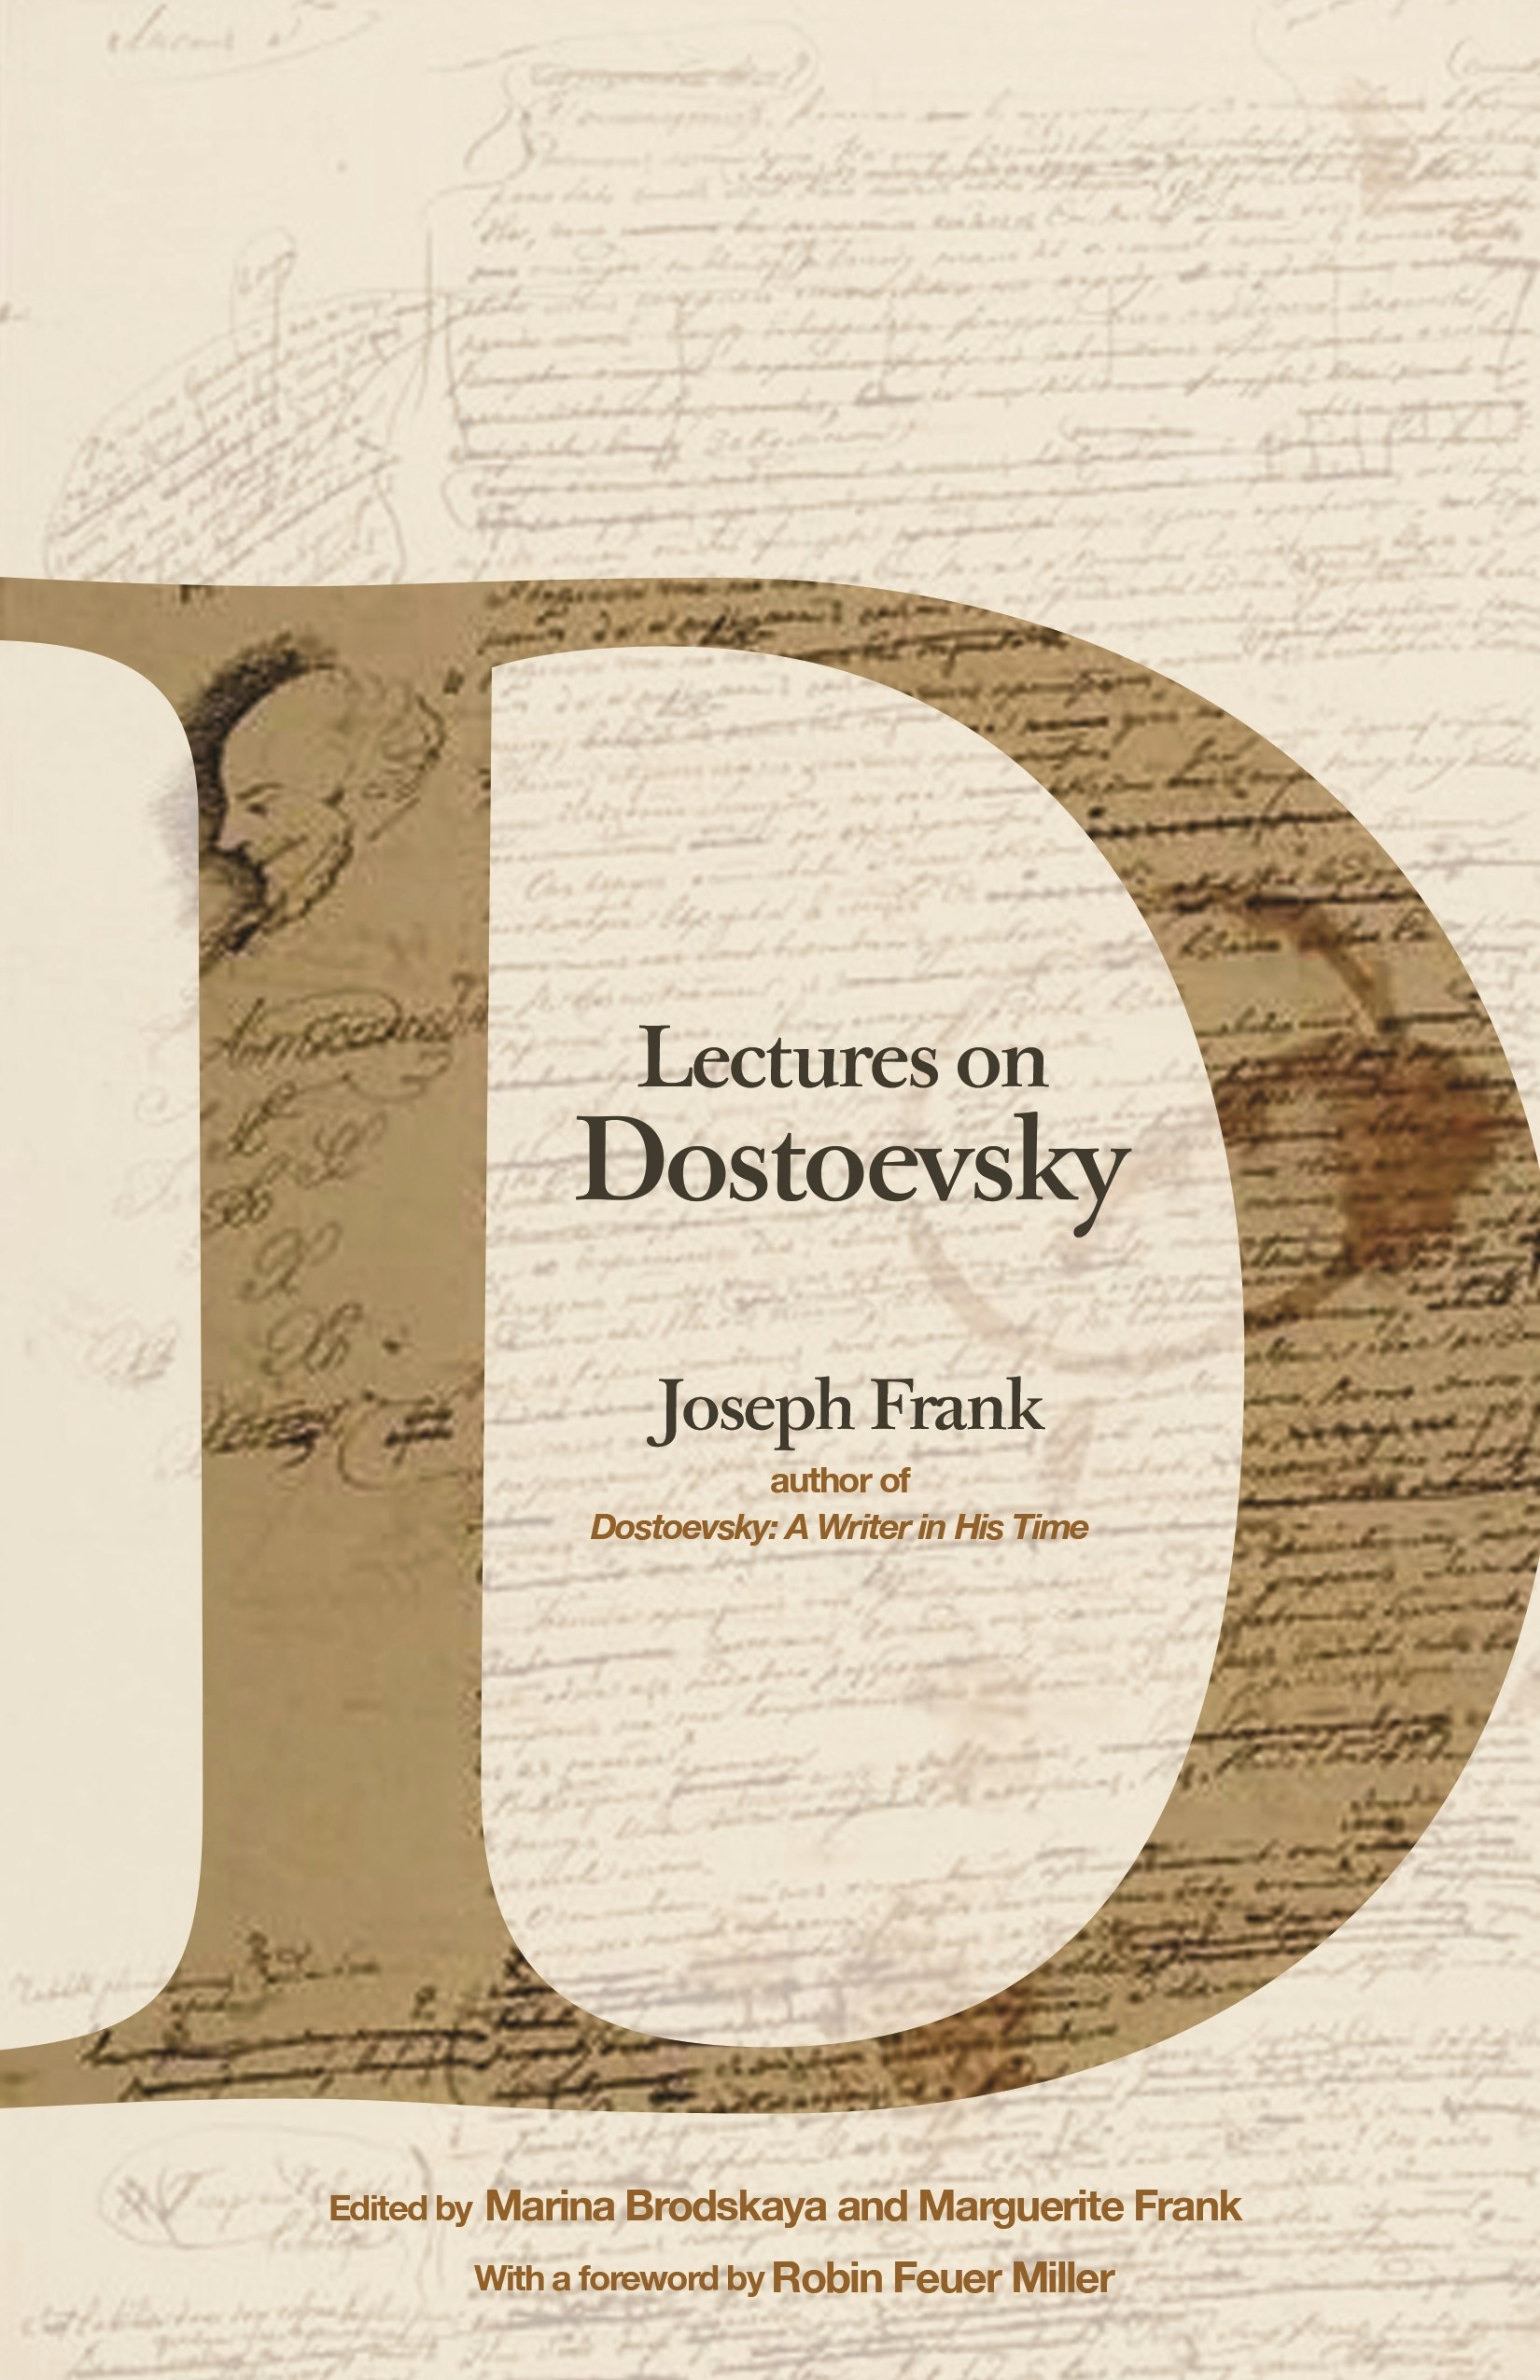 University　Princeton　Lectures　Dostoevsky　on　Press